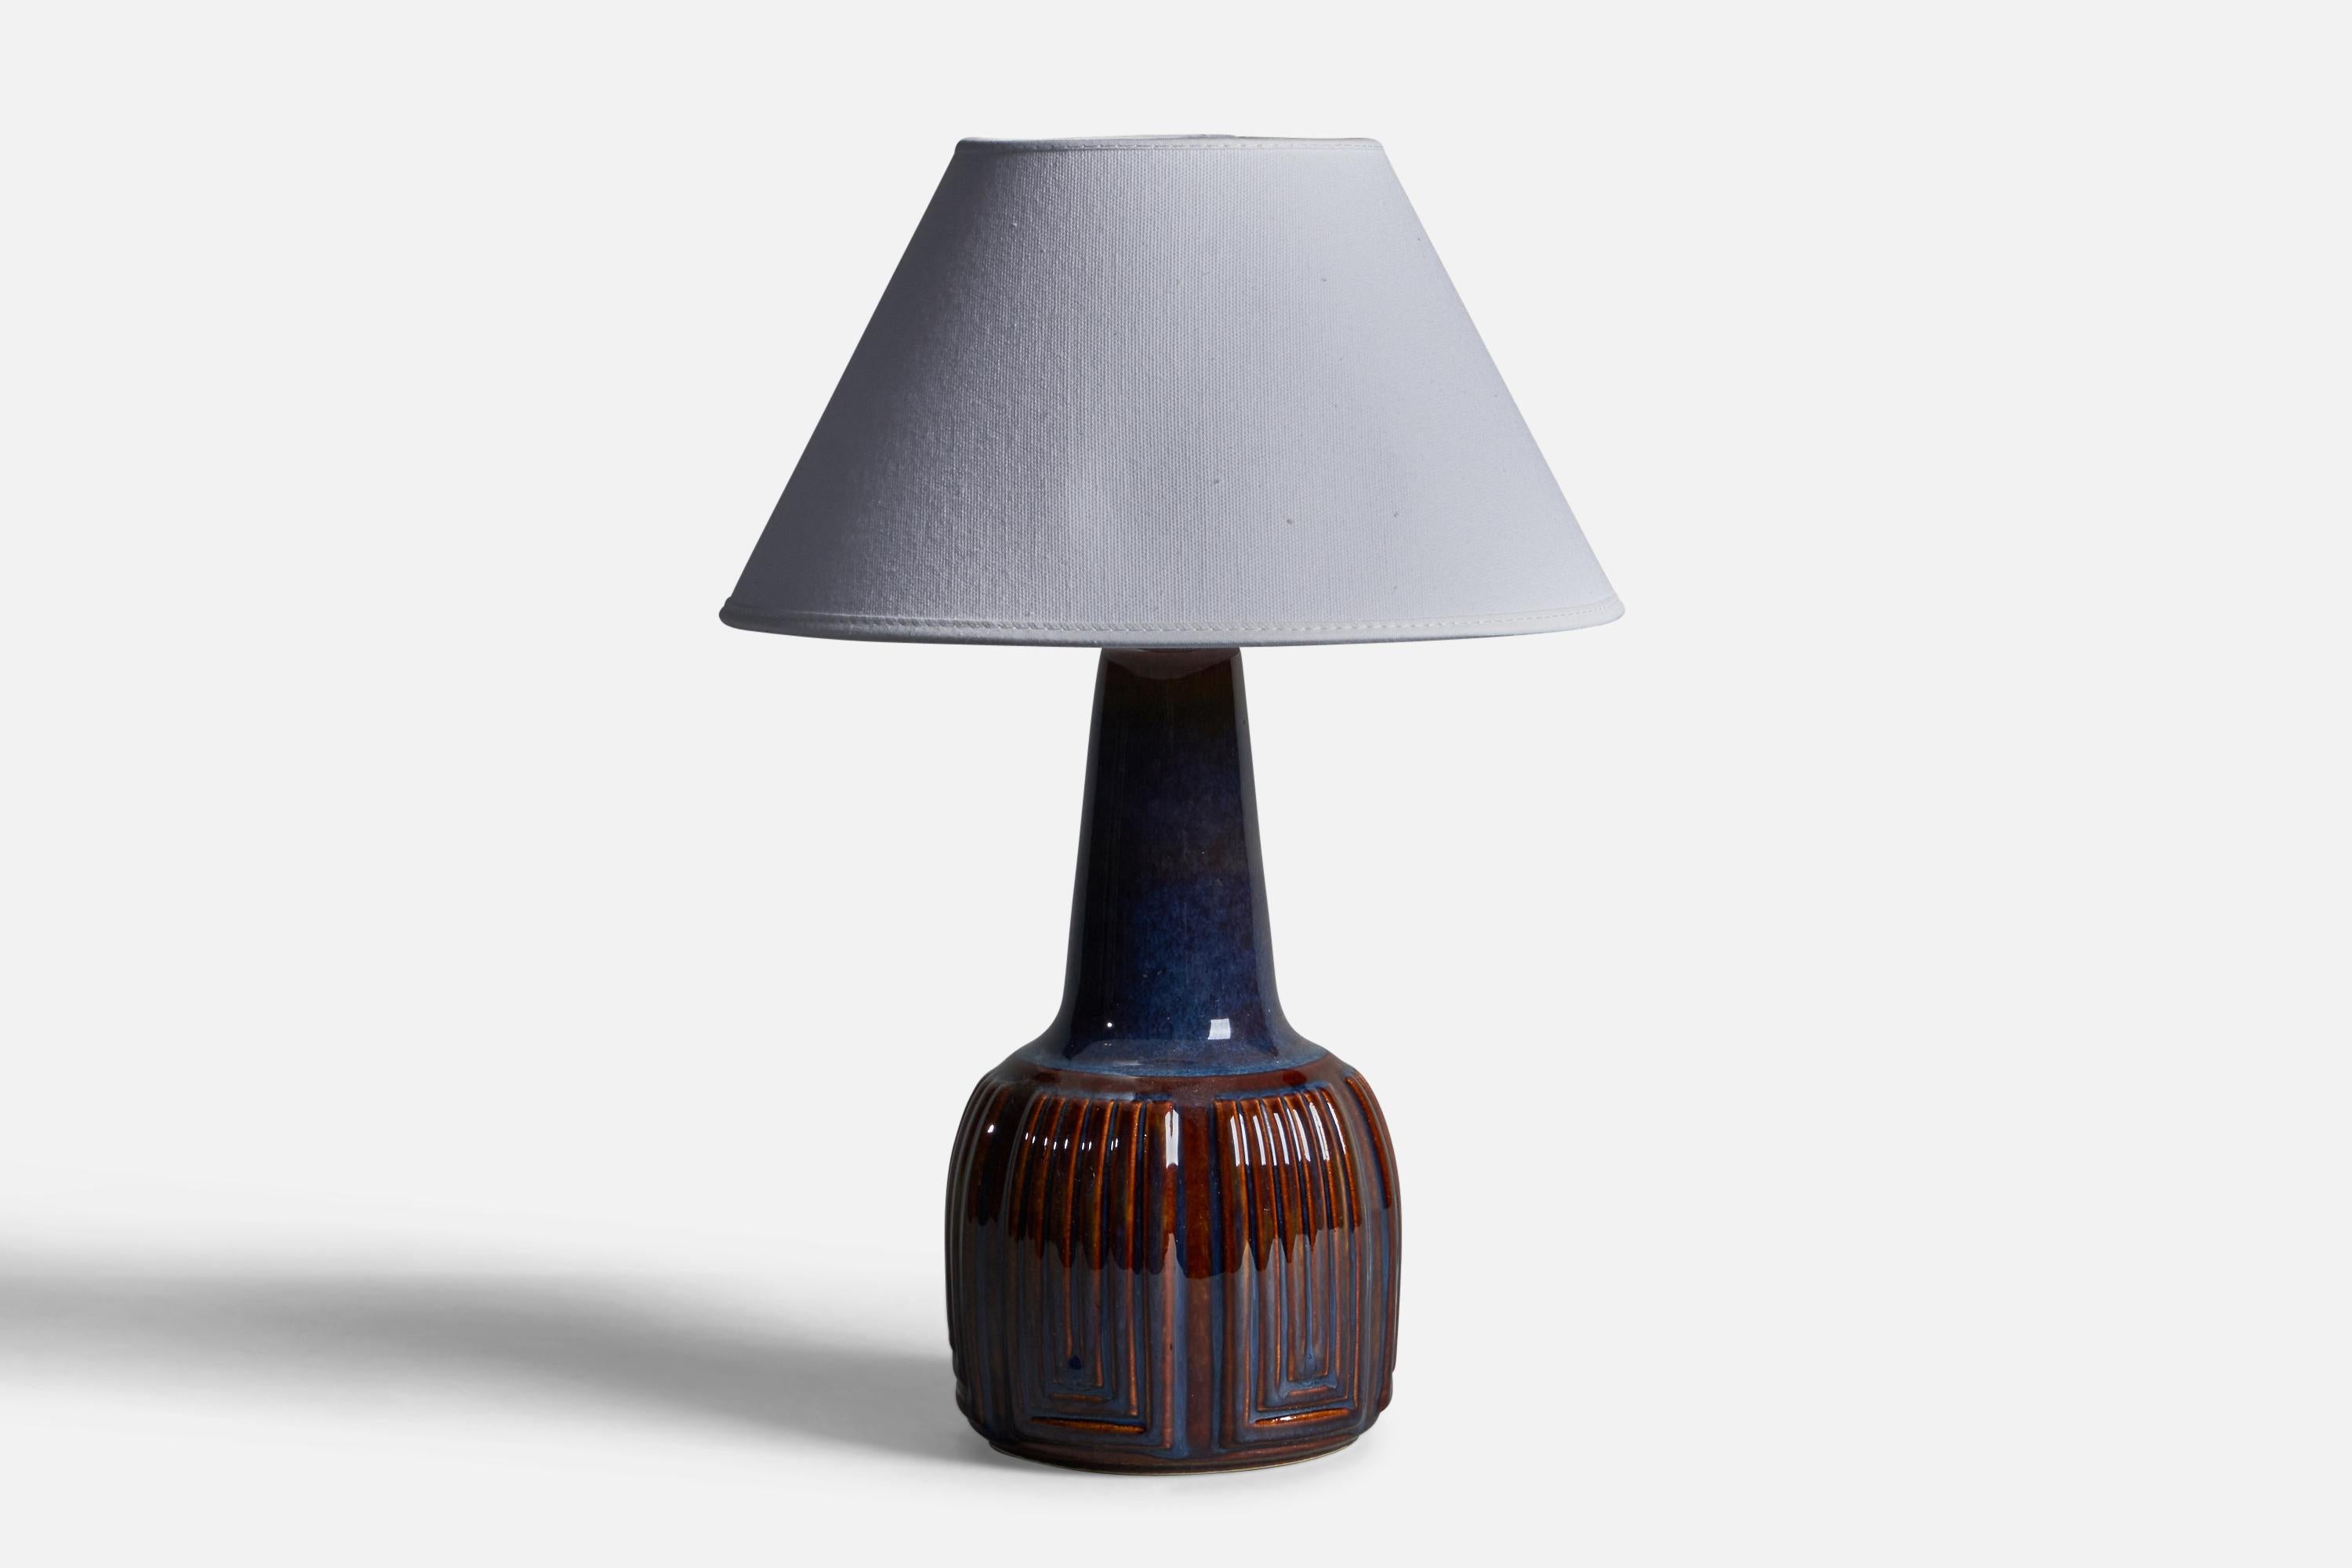 Lampe de table en grès émaillé bleu, conçue et produite par Søholm, Bornholm, Danemark, années 1960.

Dimensions de la lampe (pouces) : 11.5